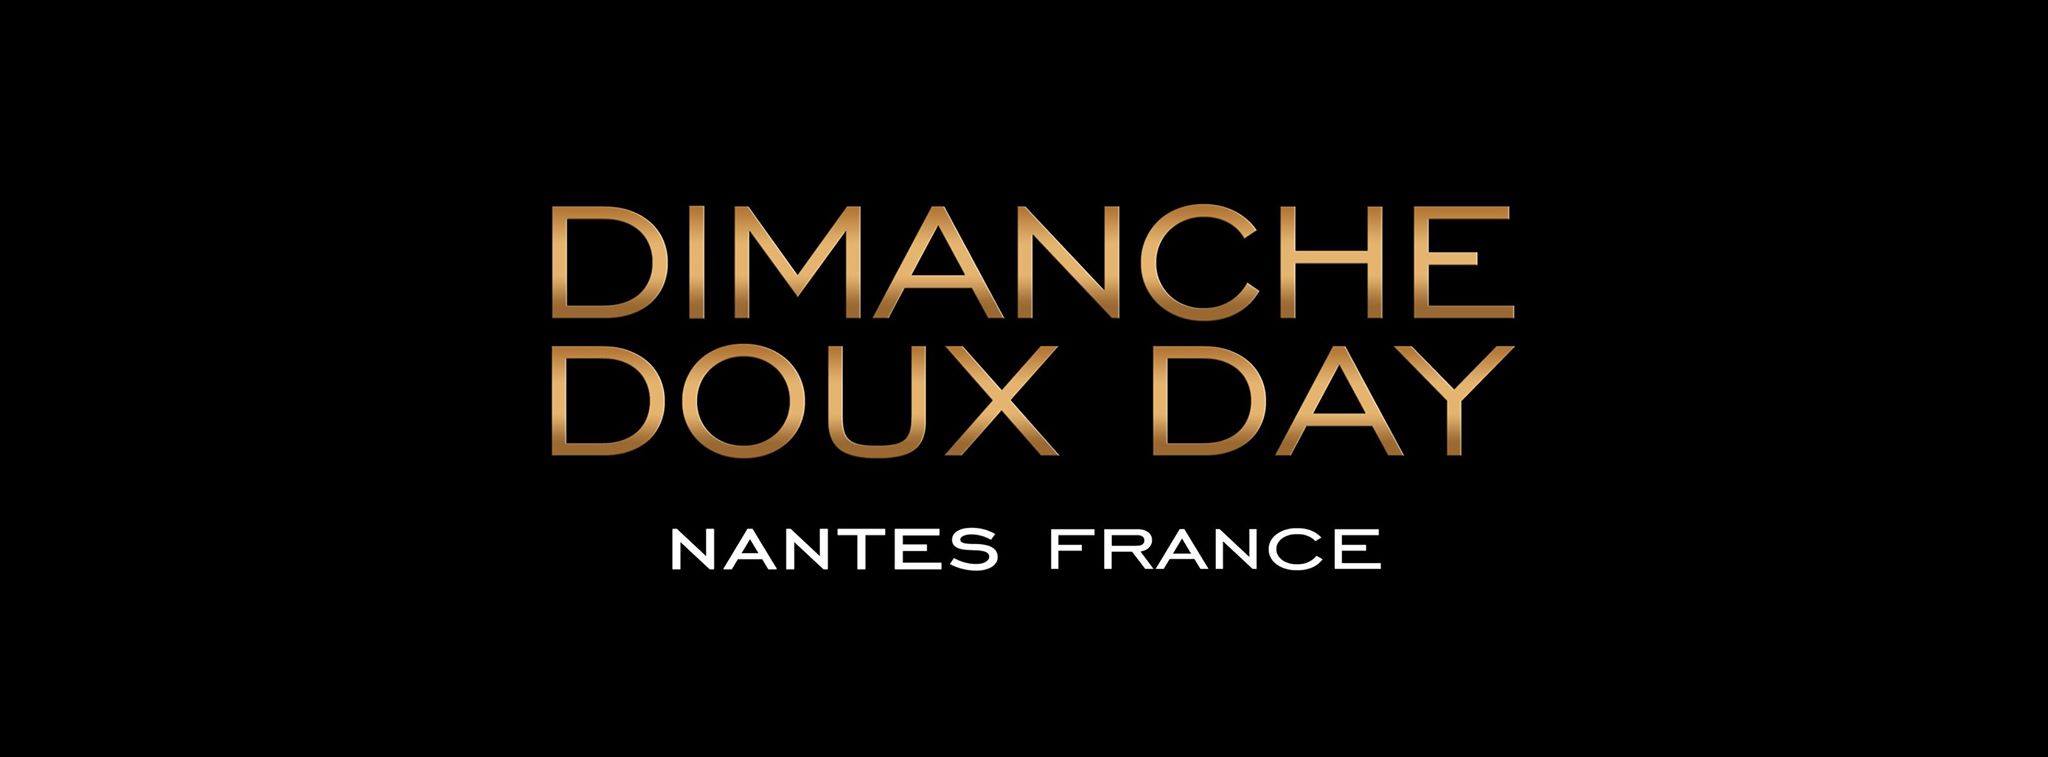 DIMANCHE DOUX DAY